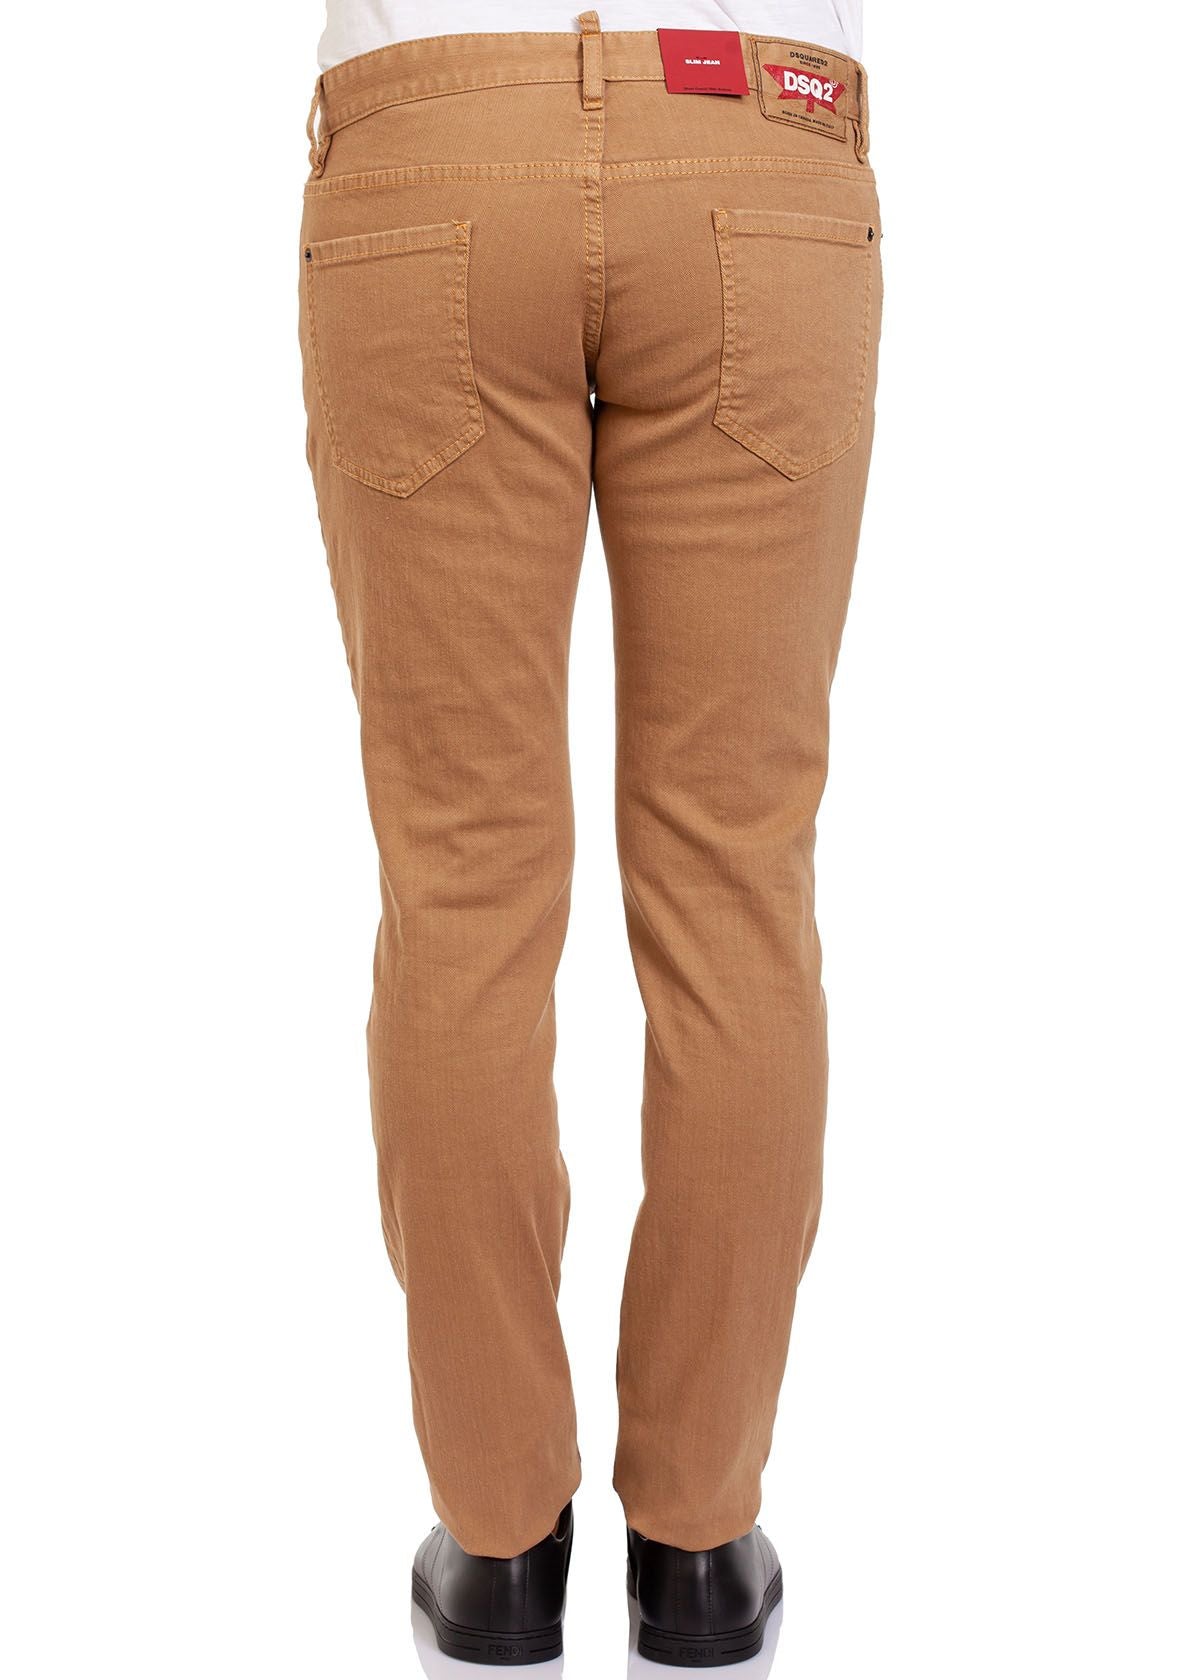 Dsquared² Men's Brown Cotton Denim Jeans